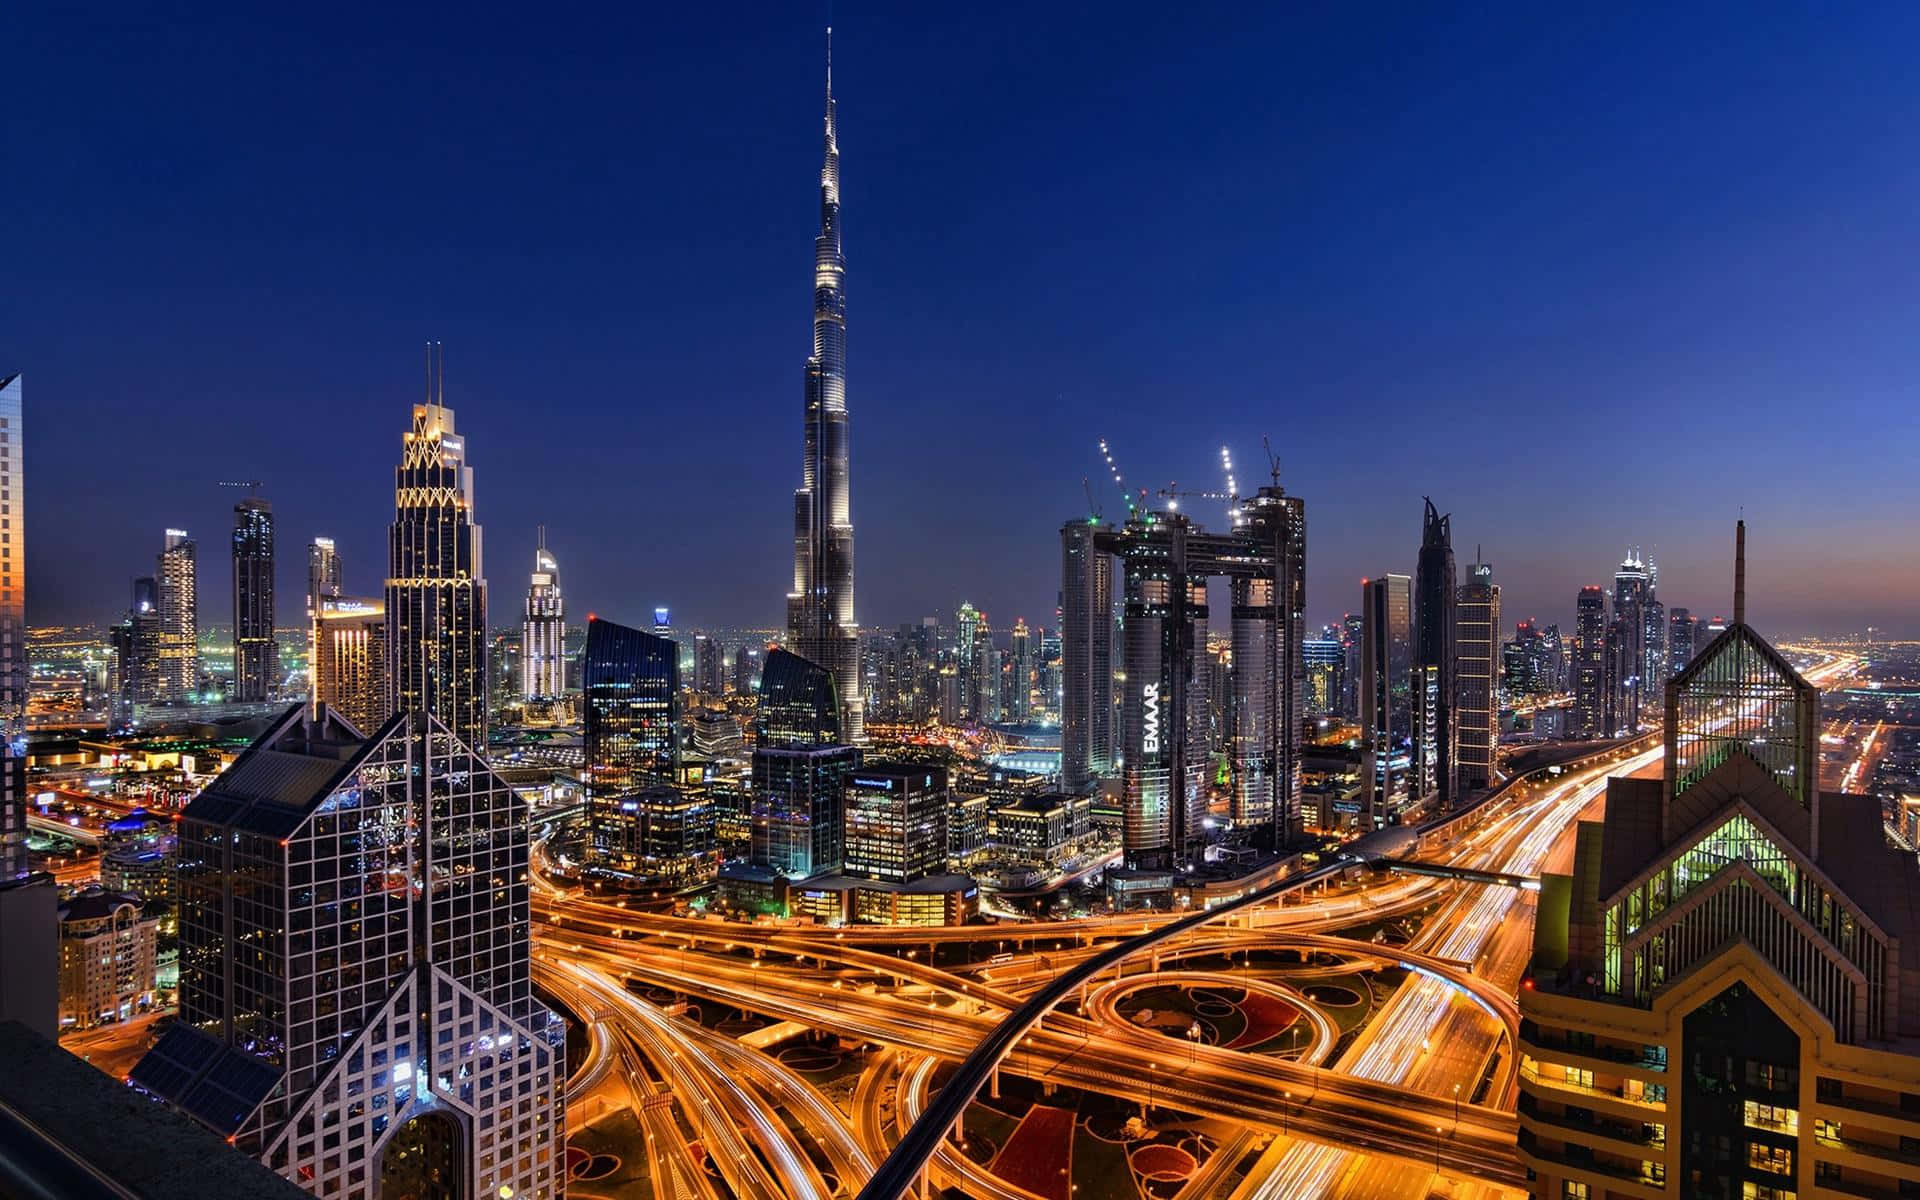 The gorgeous skyline of Dubai